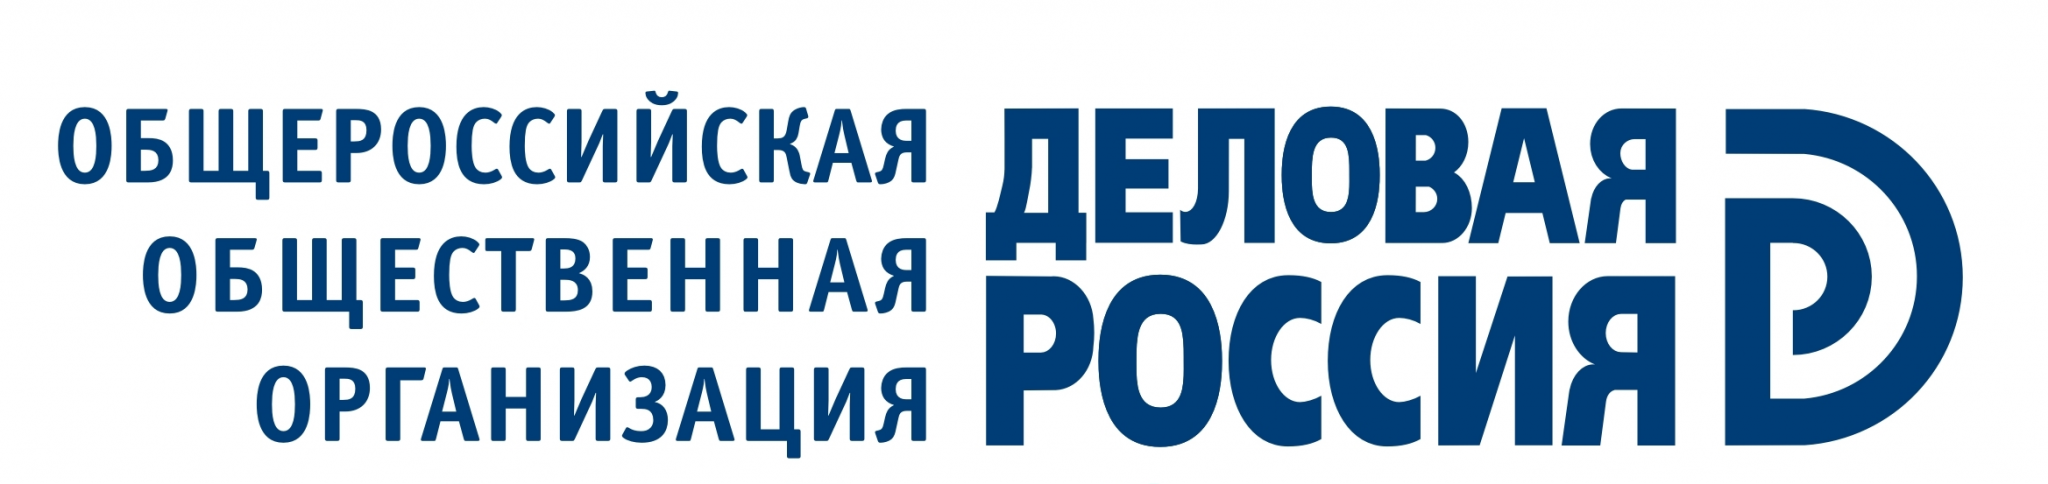 Деловая Россия_лого.png